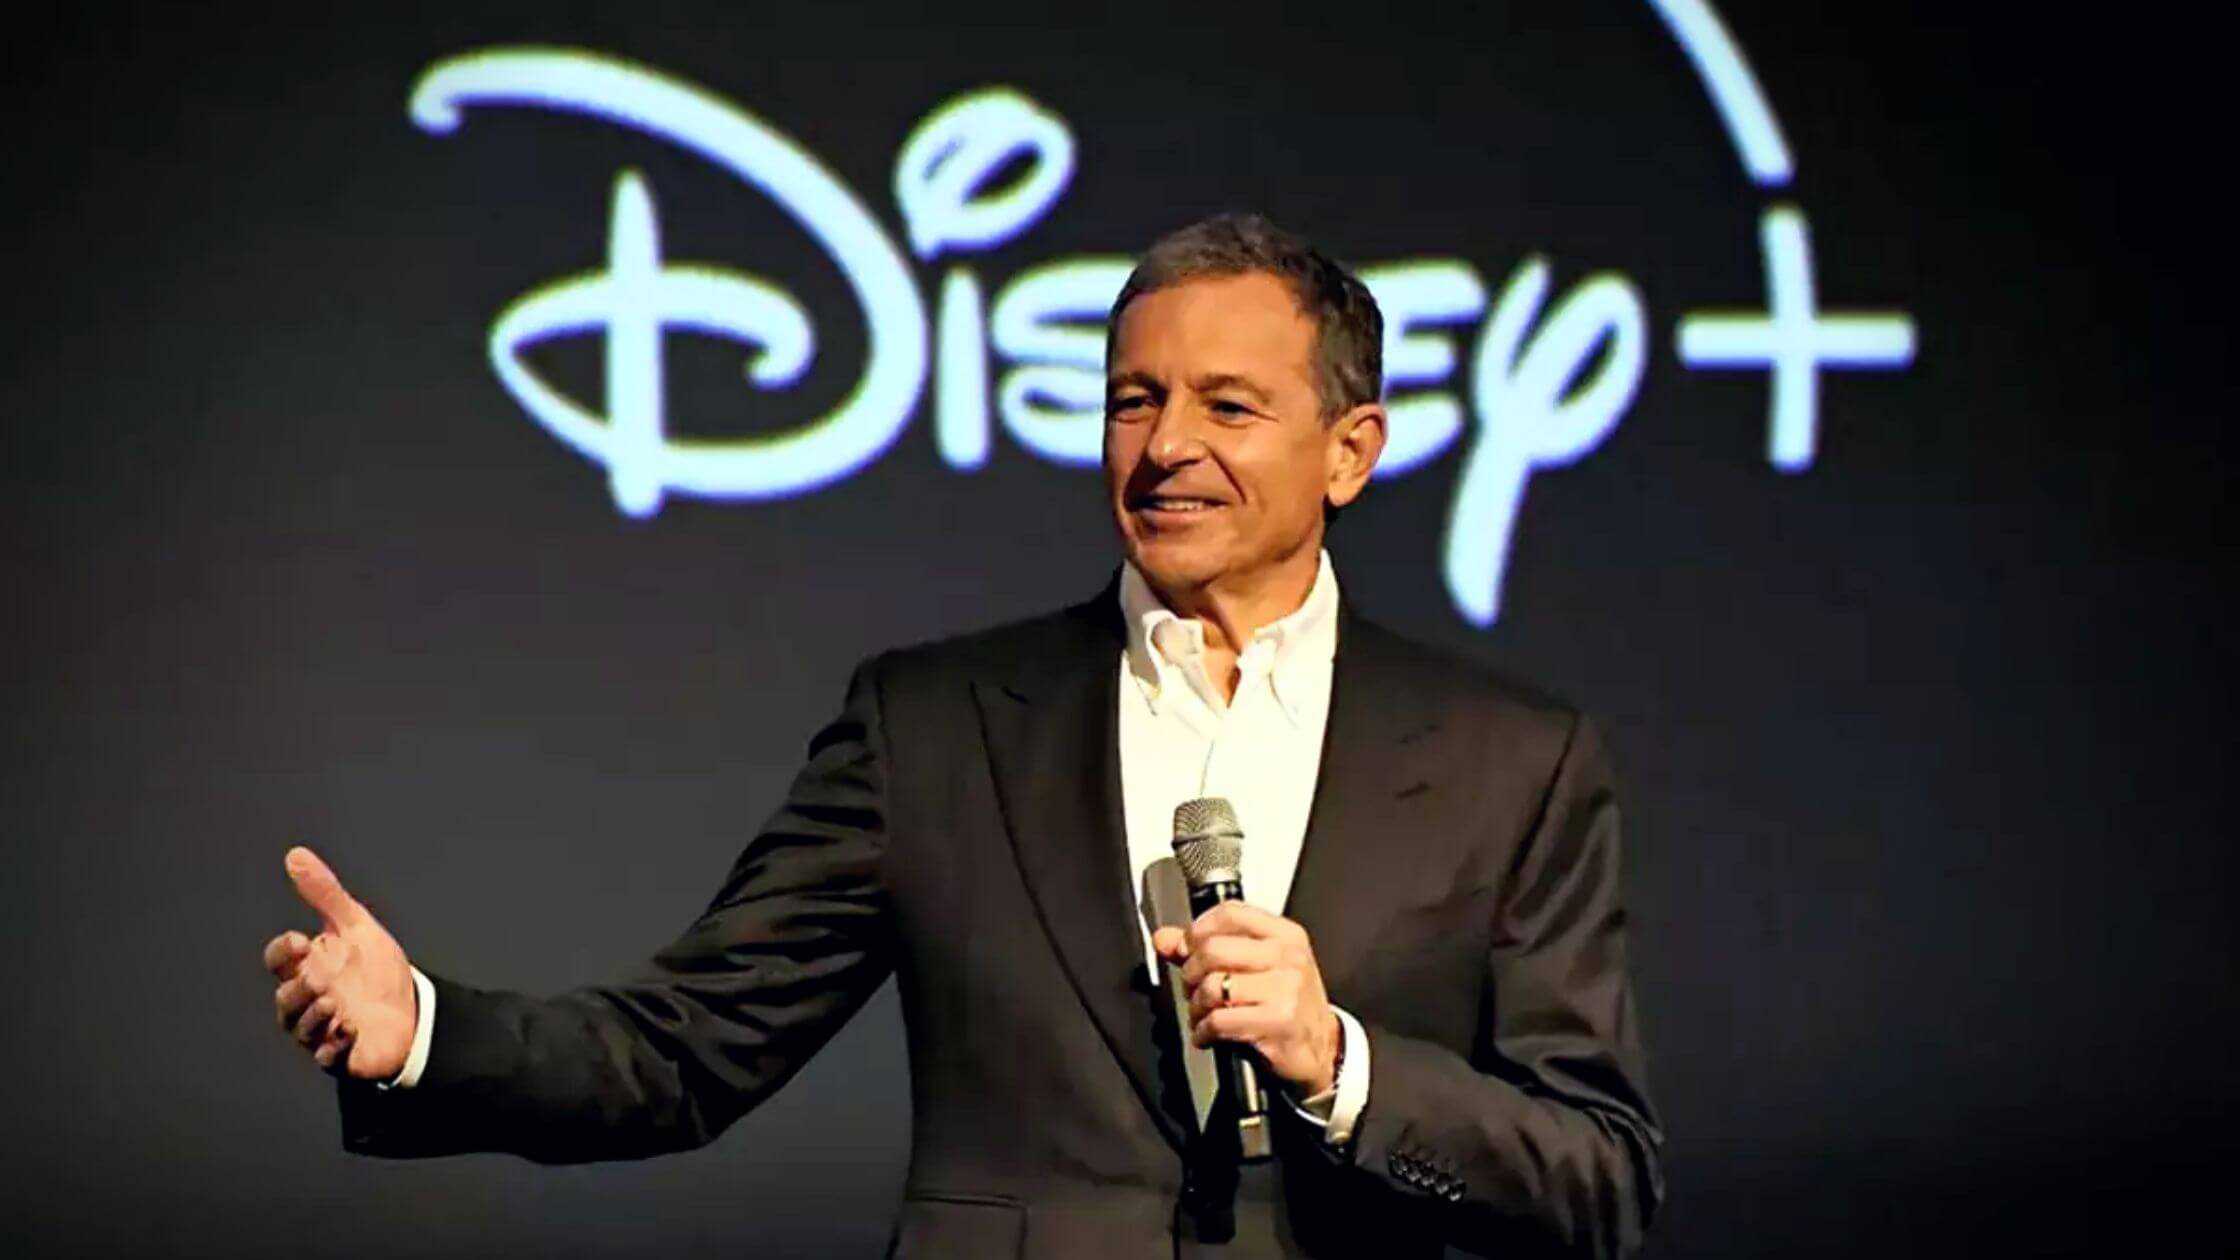 Bob Iger, CEO Of Disney Discusses Florida's LGBTQ Education Ban